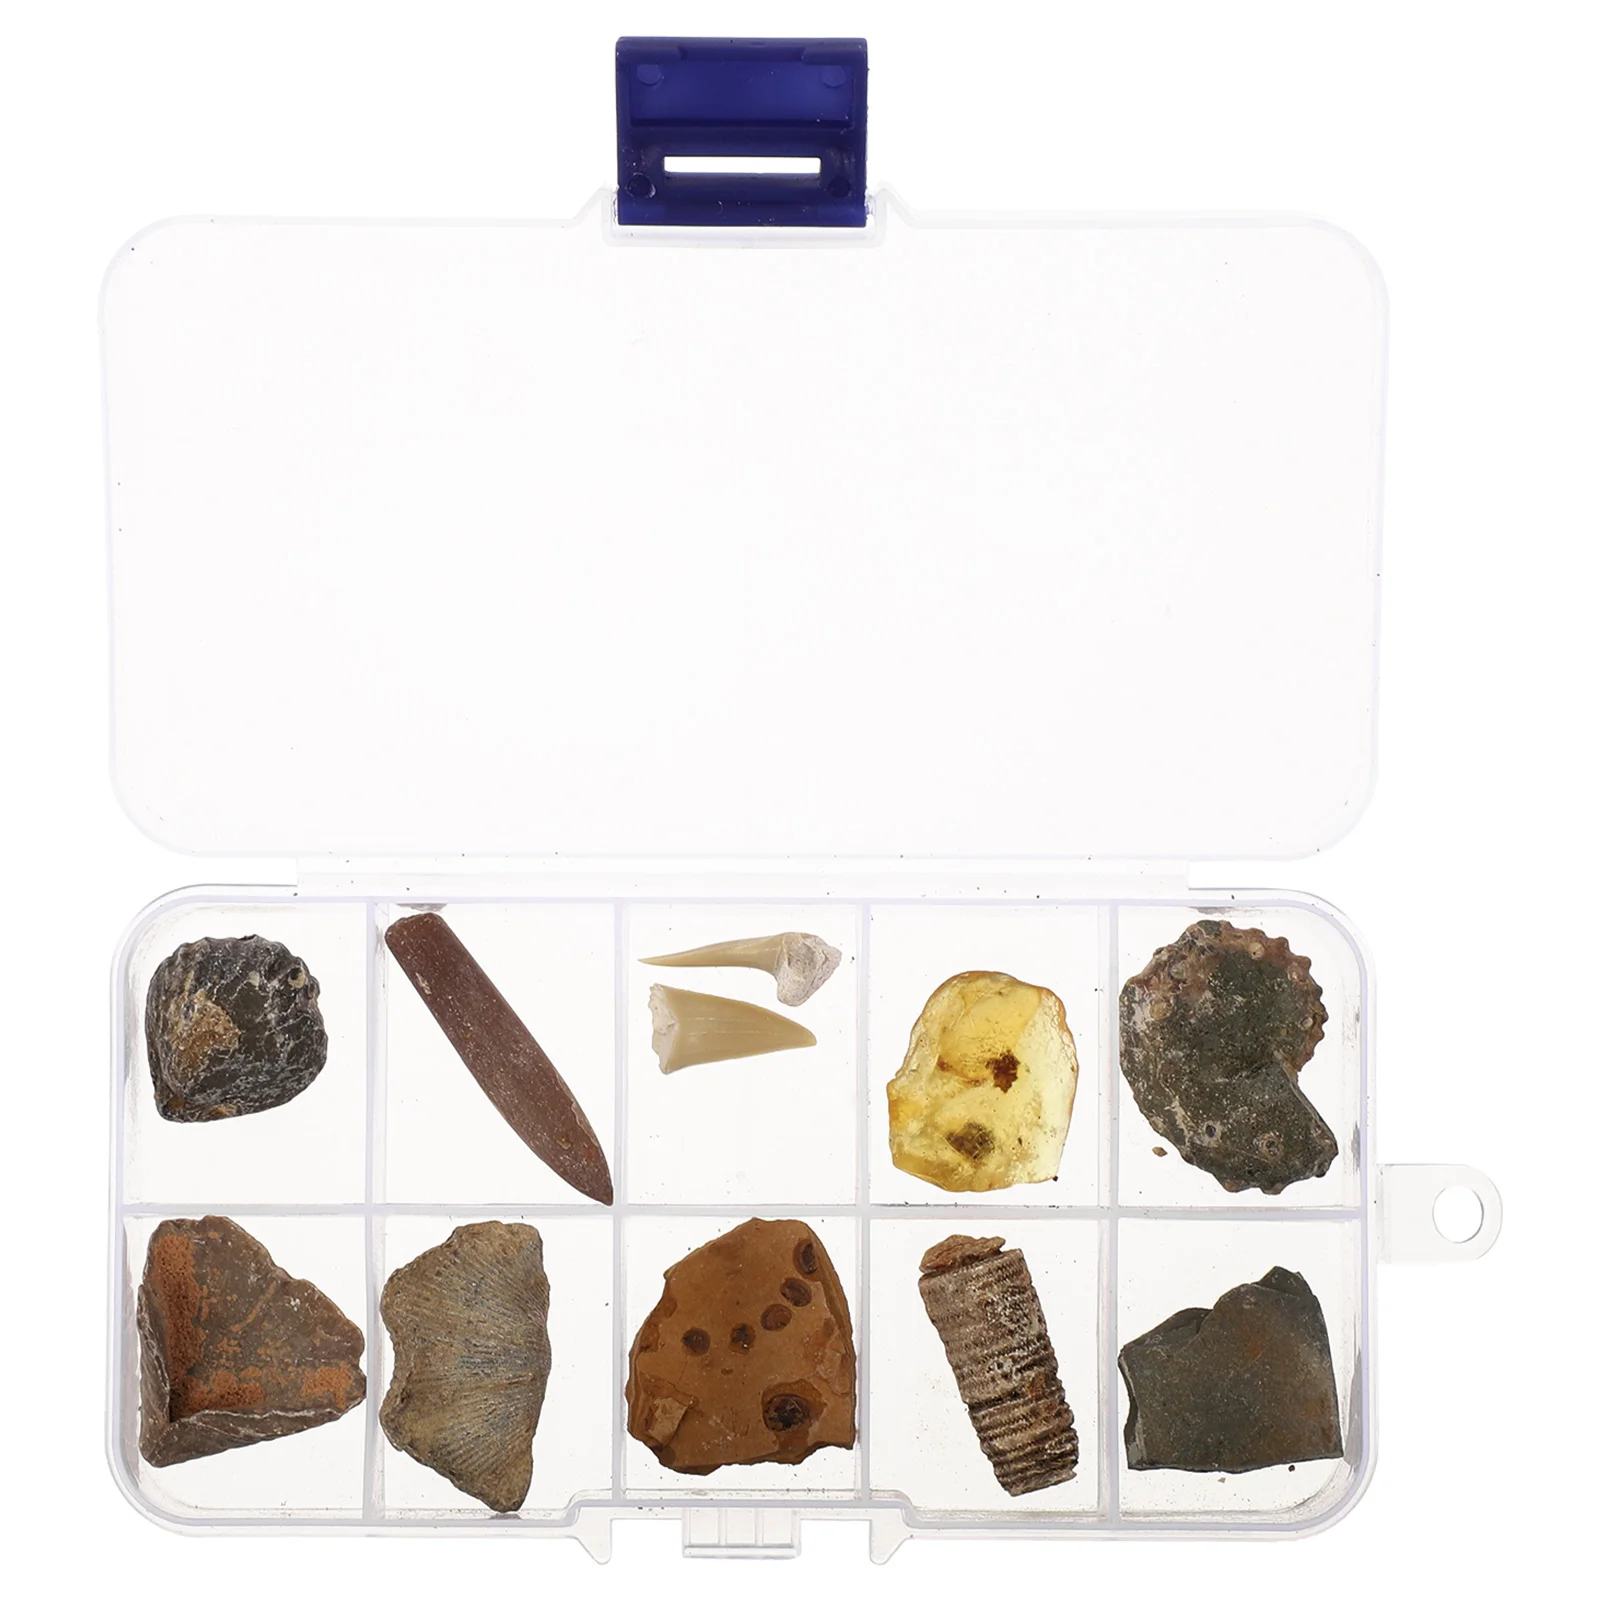 

Balacoo, палеонтологические ископаемые образцы-трехбитный ископаемый и янтарный образец для научного образования